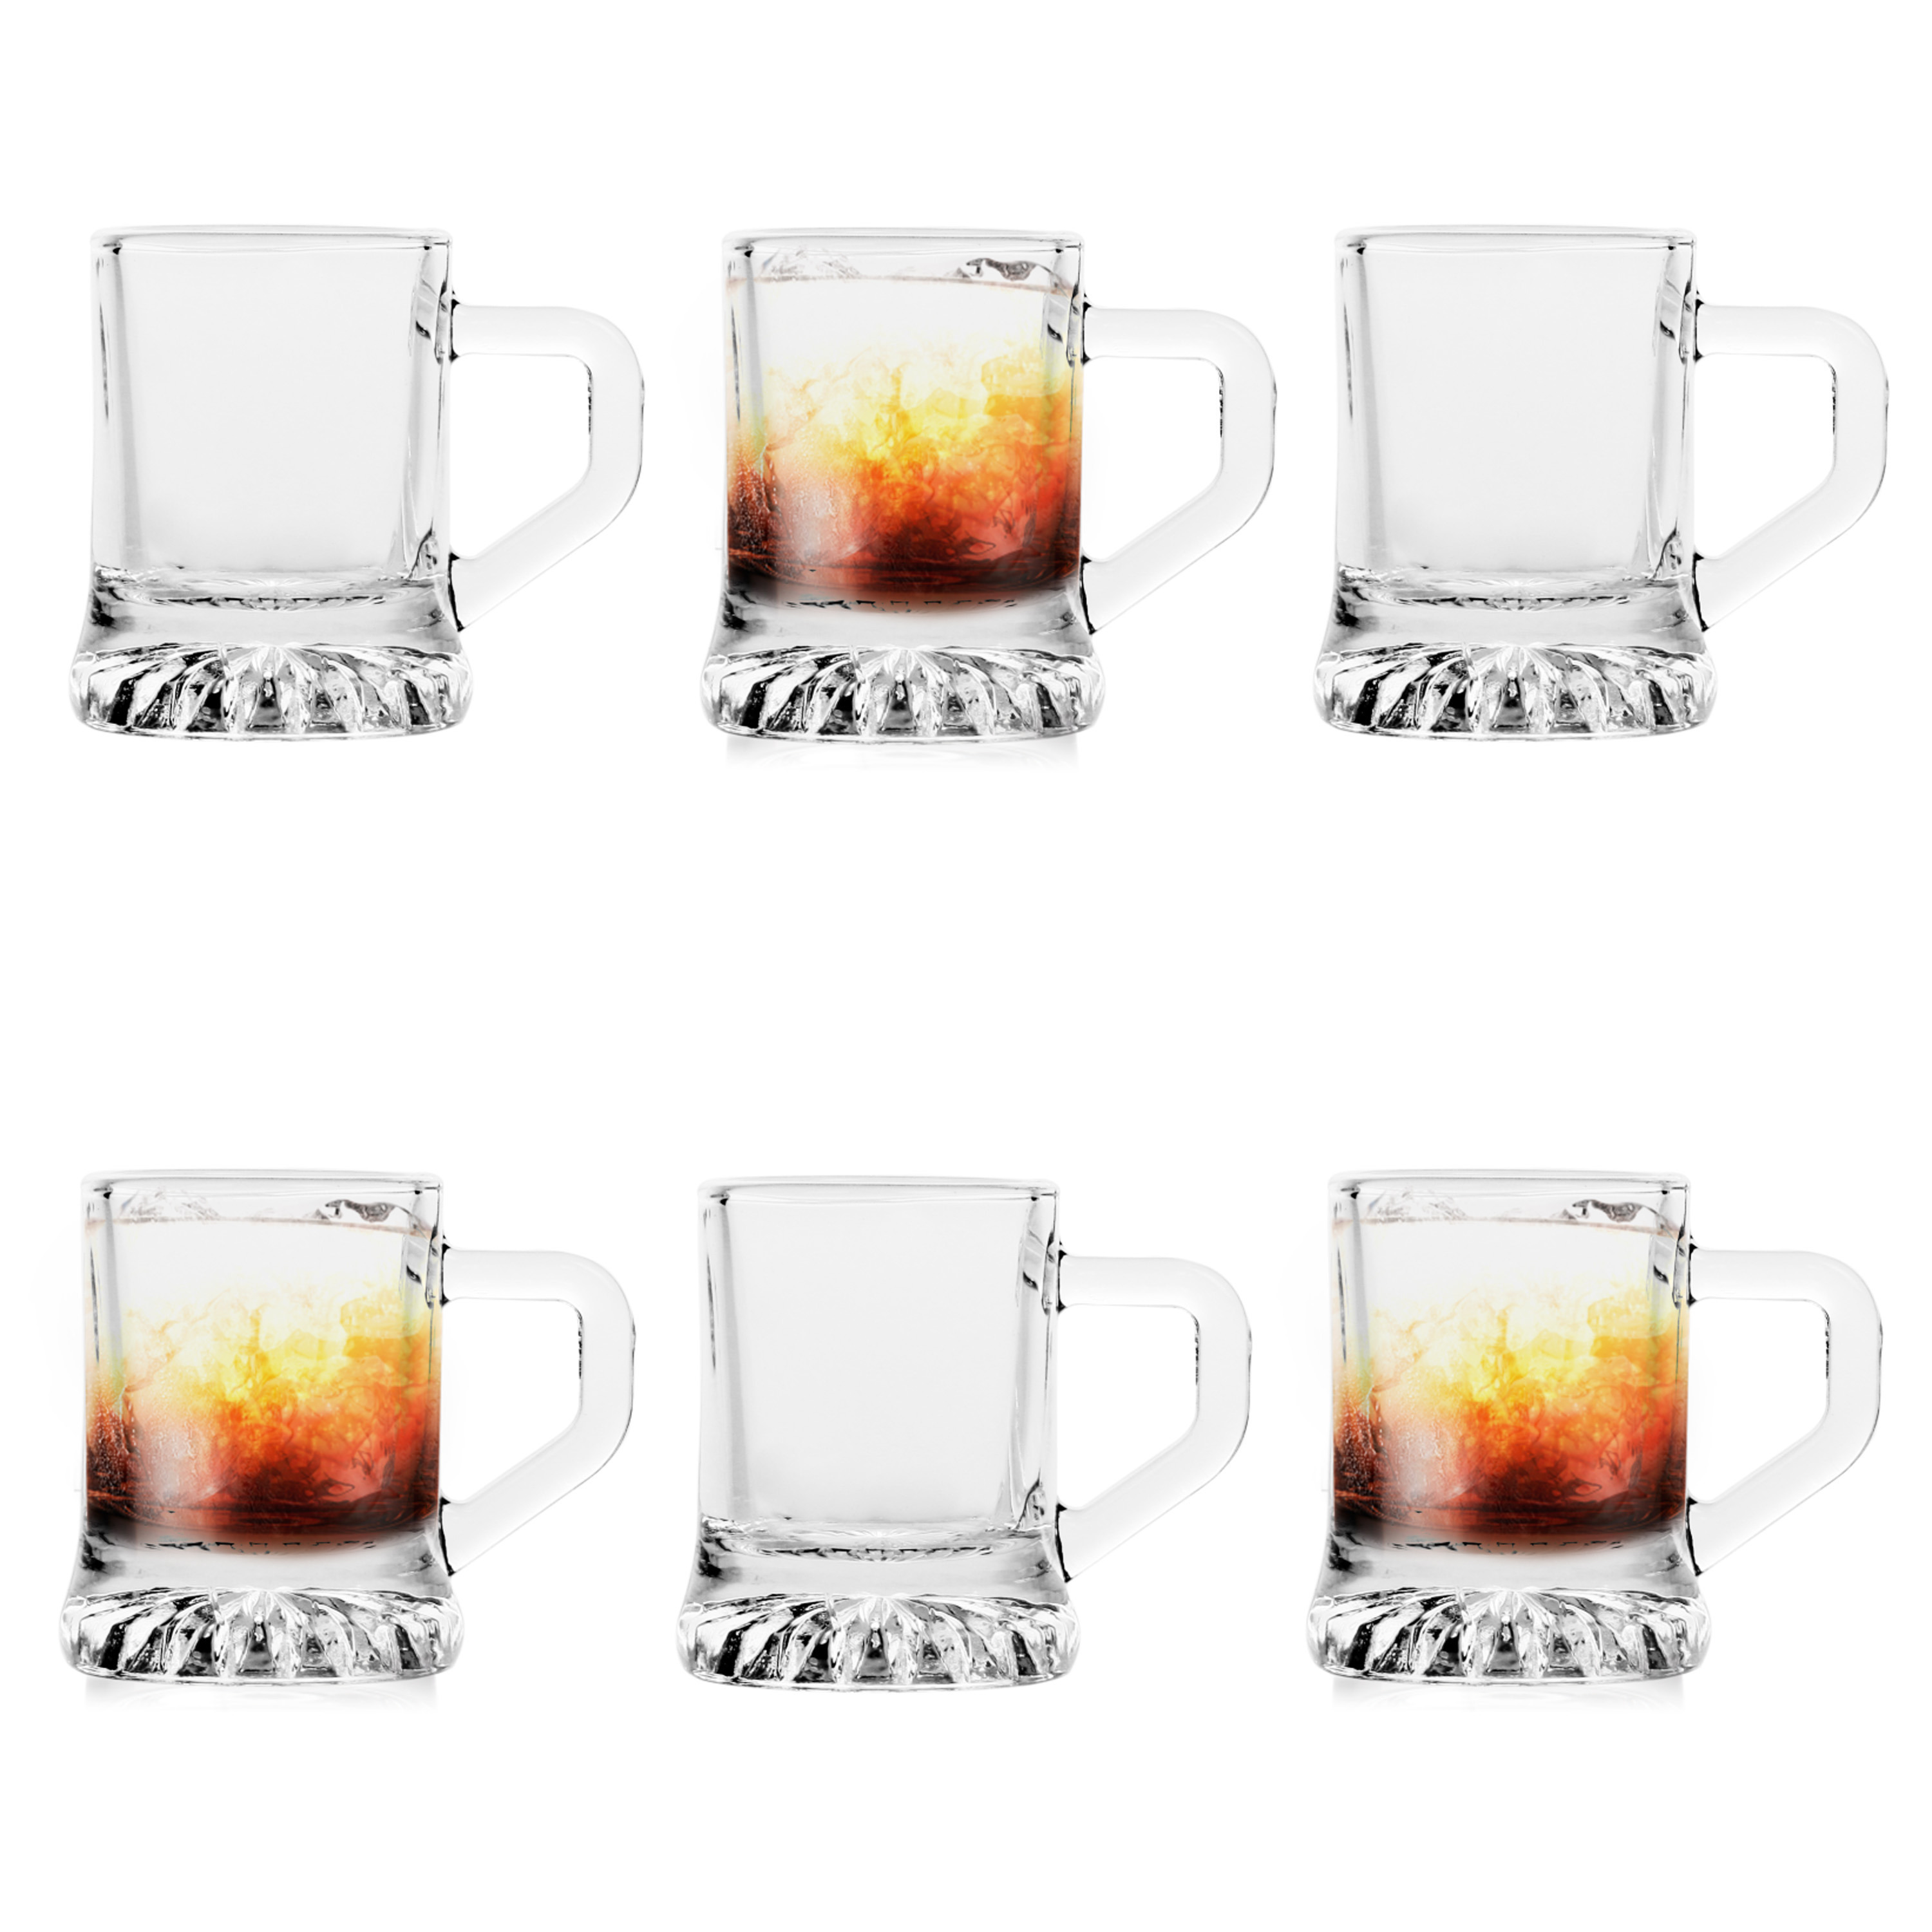 Glasmark Shotglaasjes/borrelglazen - mini bierglas - transparant glas - 6 stuks - 25 ml -